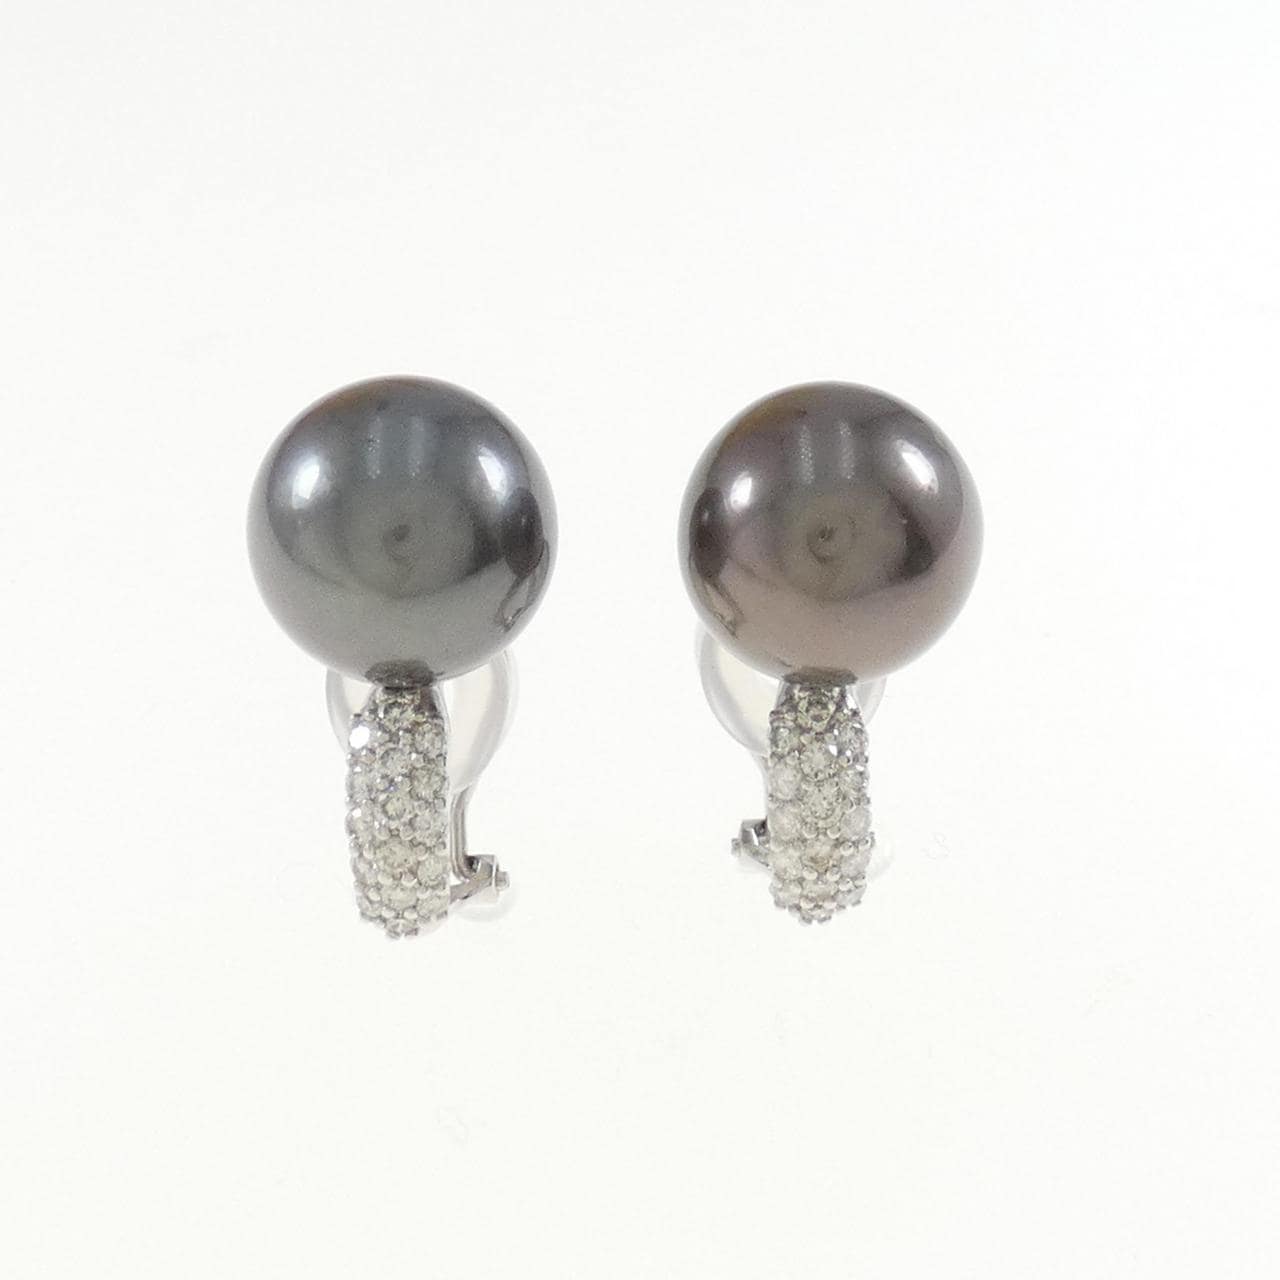 K18WG black butterfly pearl earrings 12.0mm